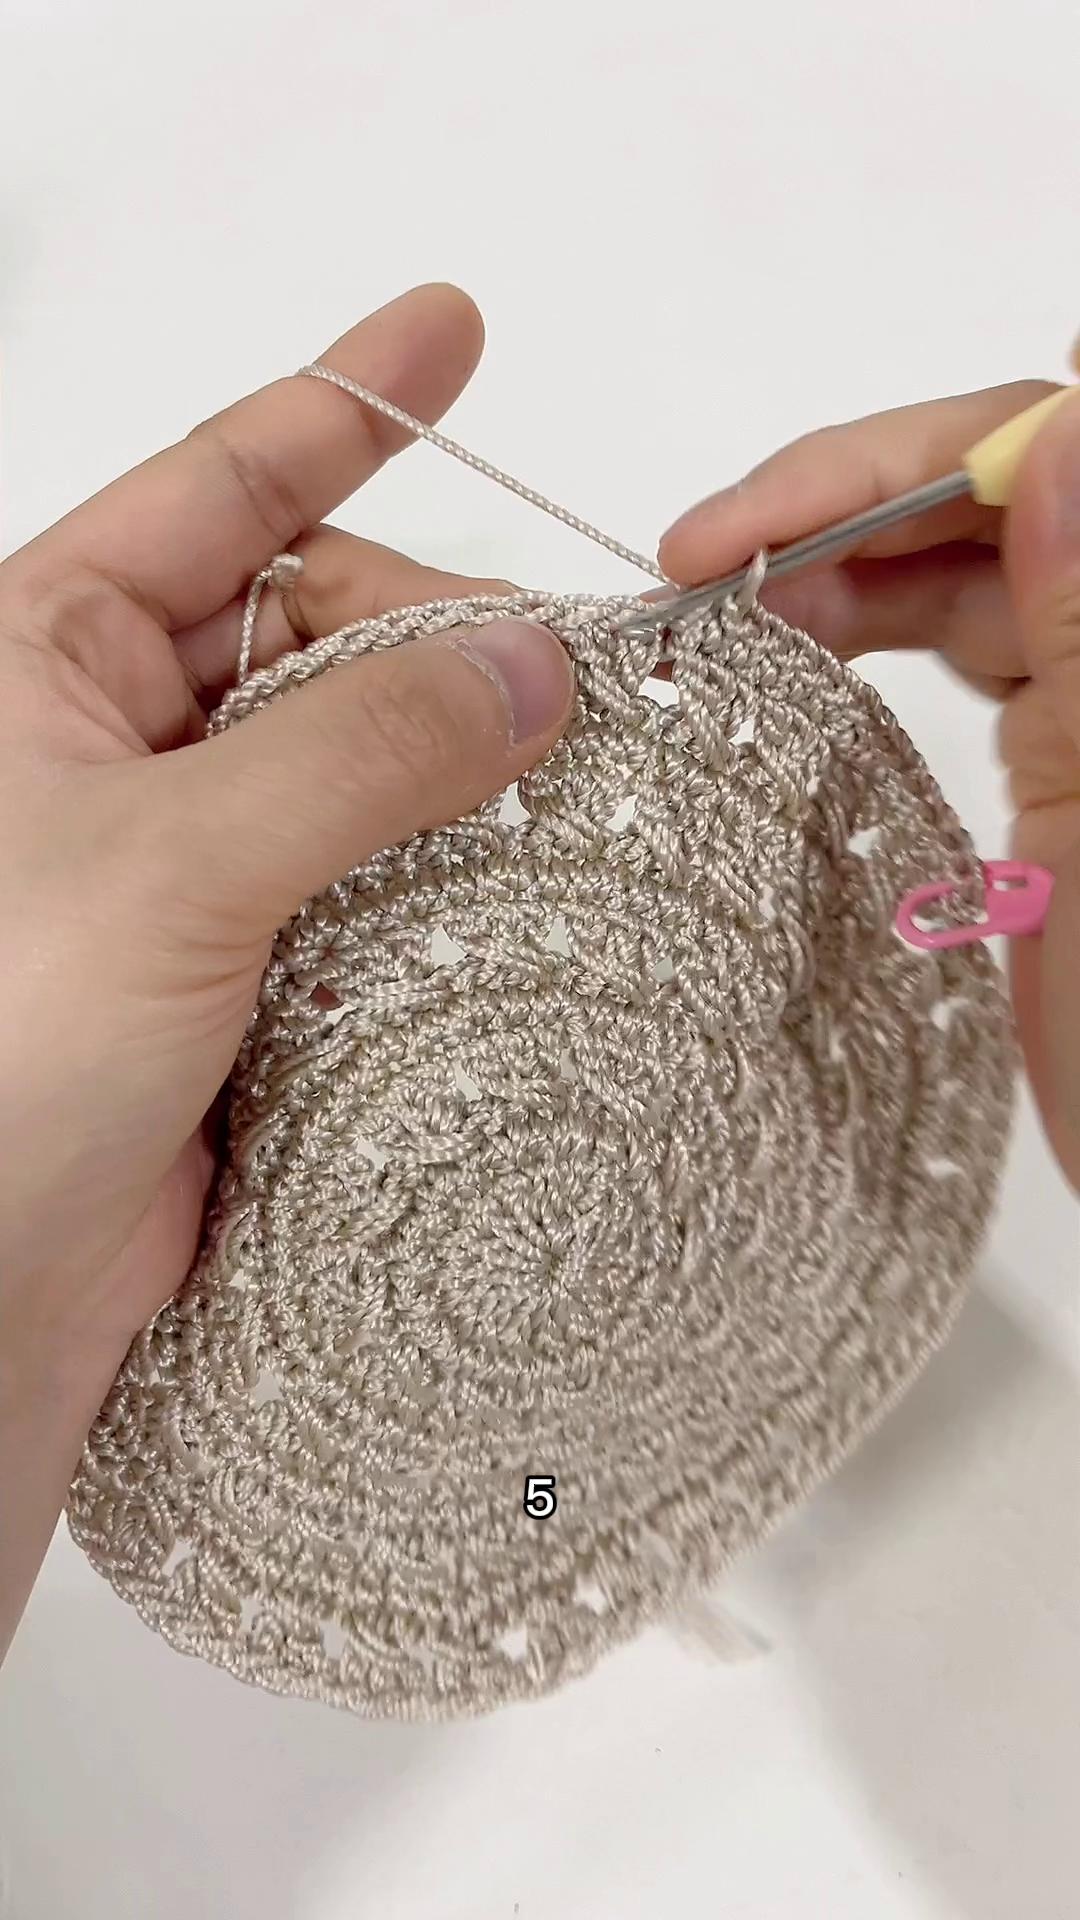 雅馨绣坊手工编织镂空珍珠遮阳帽教程：第三集图解和视频